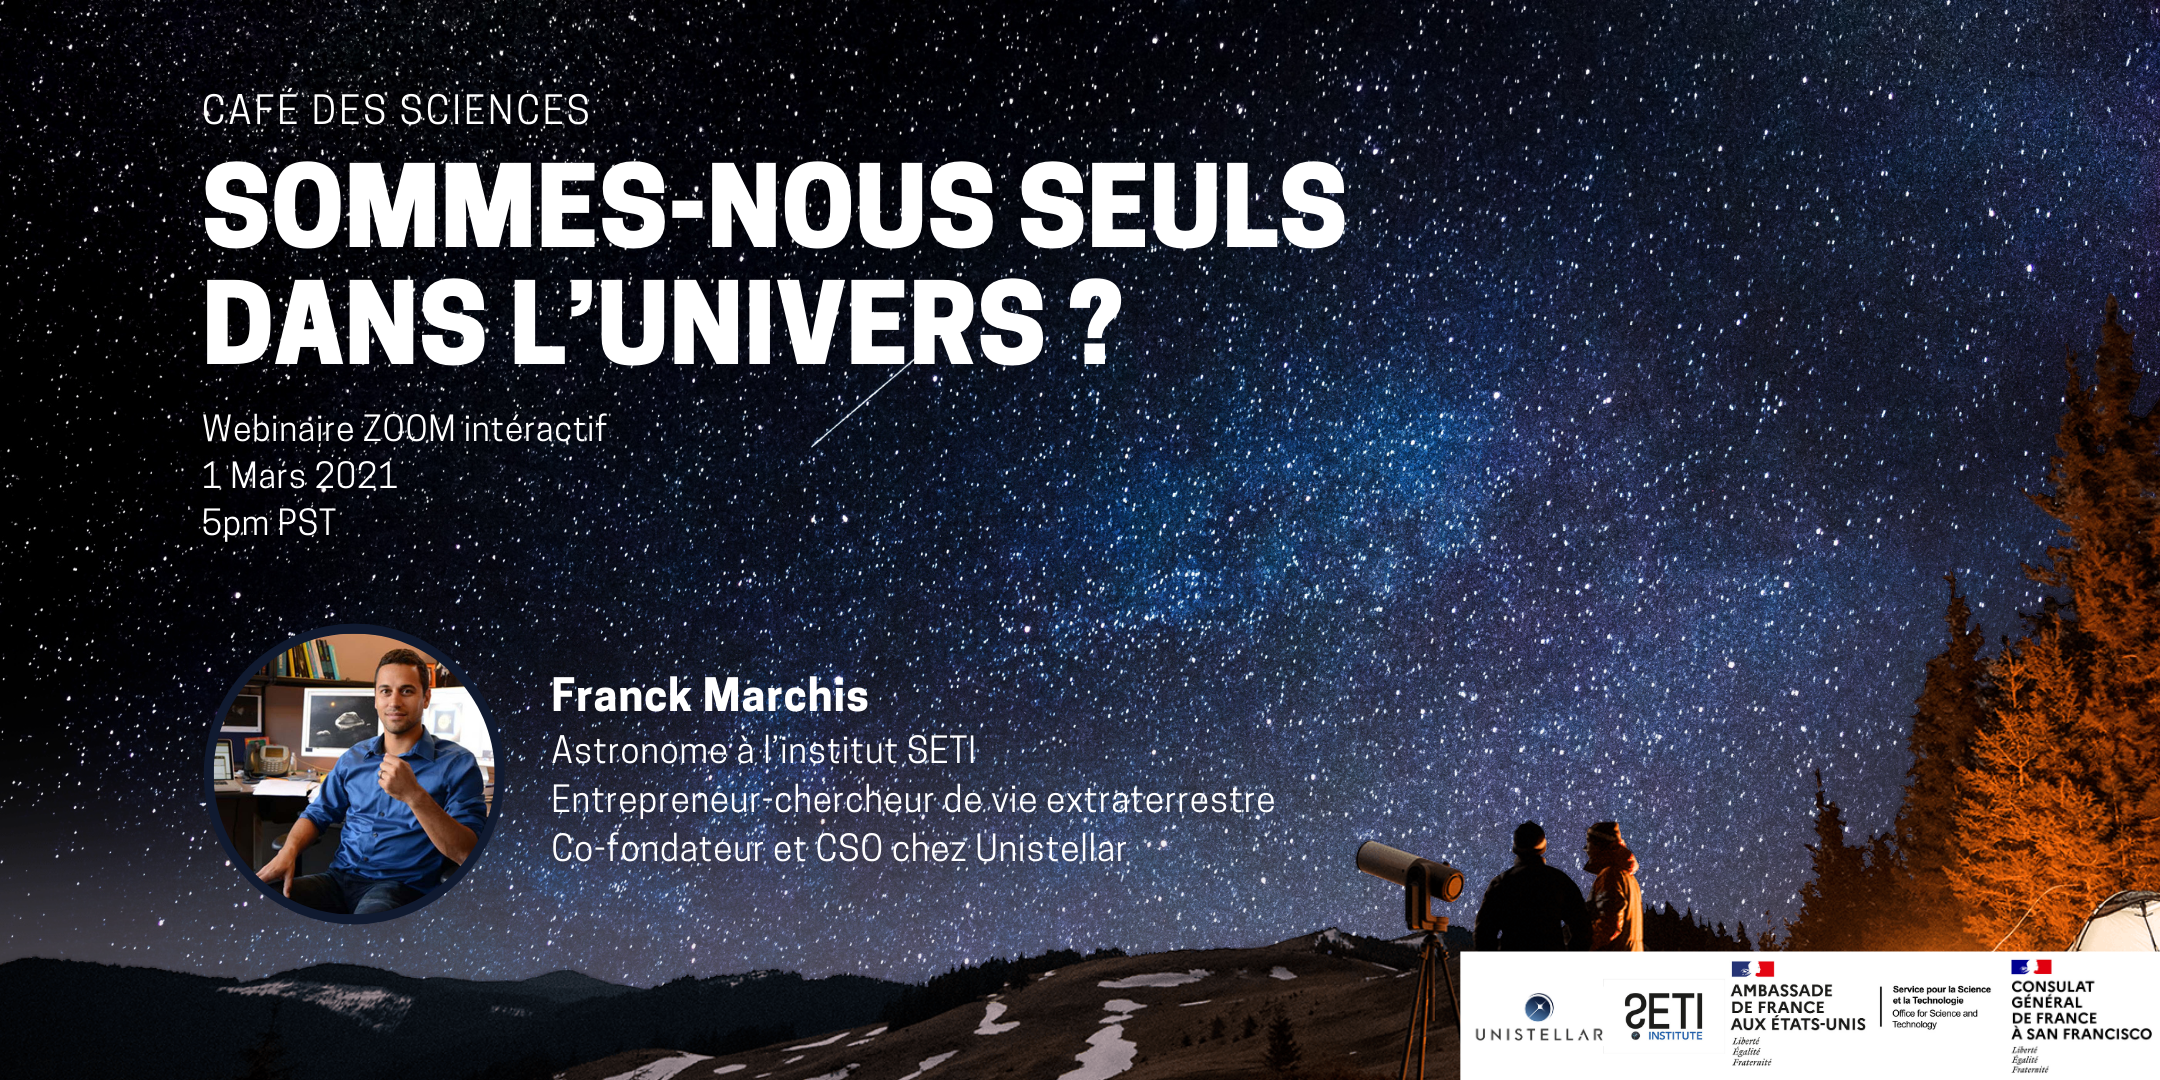 Sommes-nous seuls dans l’univers ? Retour sur le café des sciences du 1er Mars aux côtés de Franck Marchis